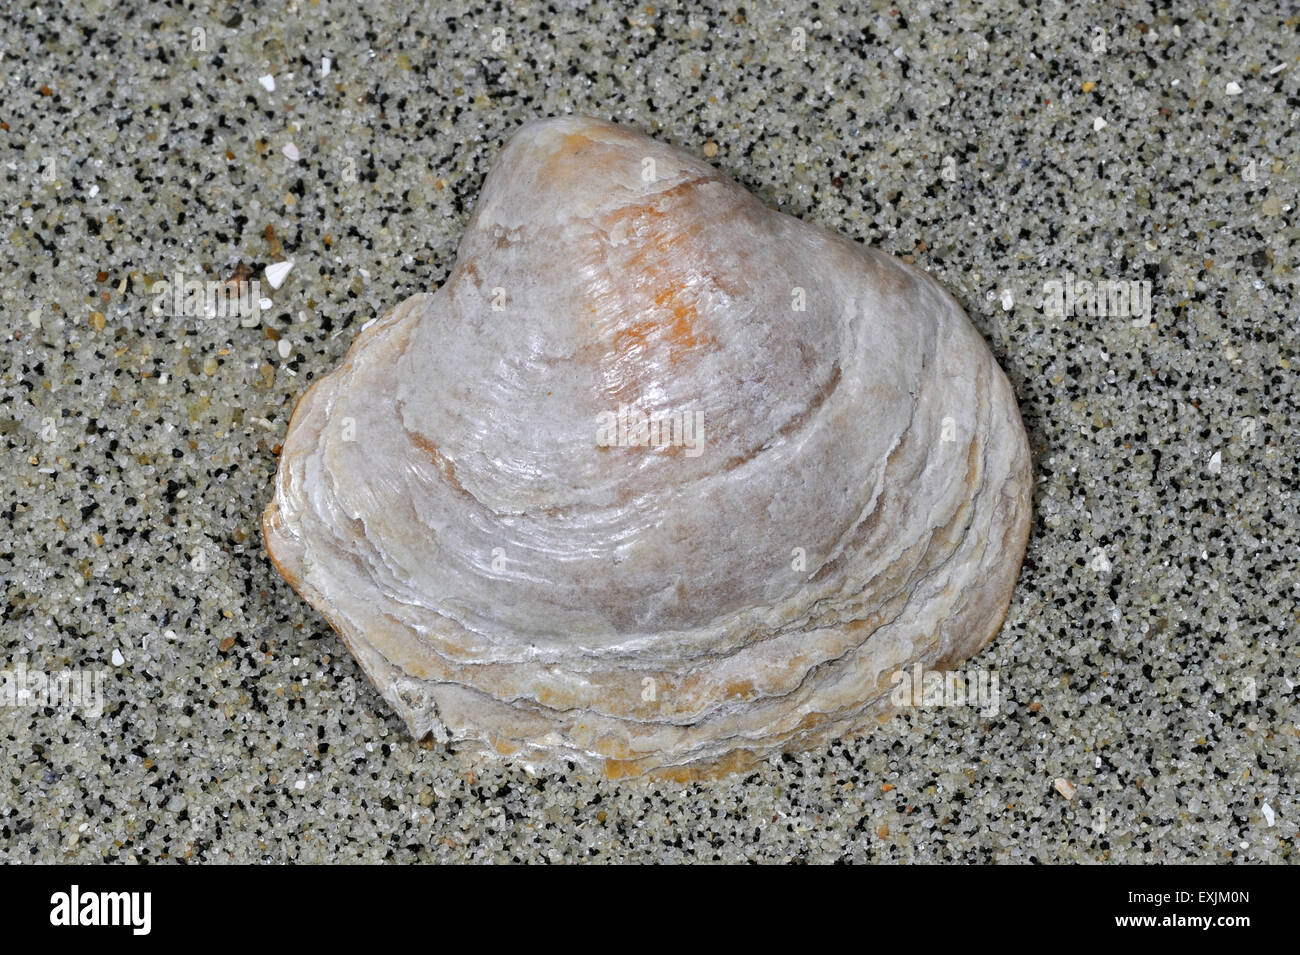 Oyster sella / Jingle shell (Anomia ephippium) lavato sulla spiaggia Foto Stock